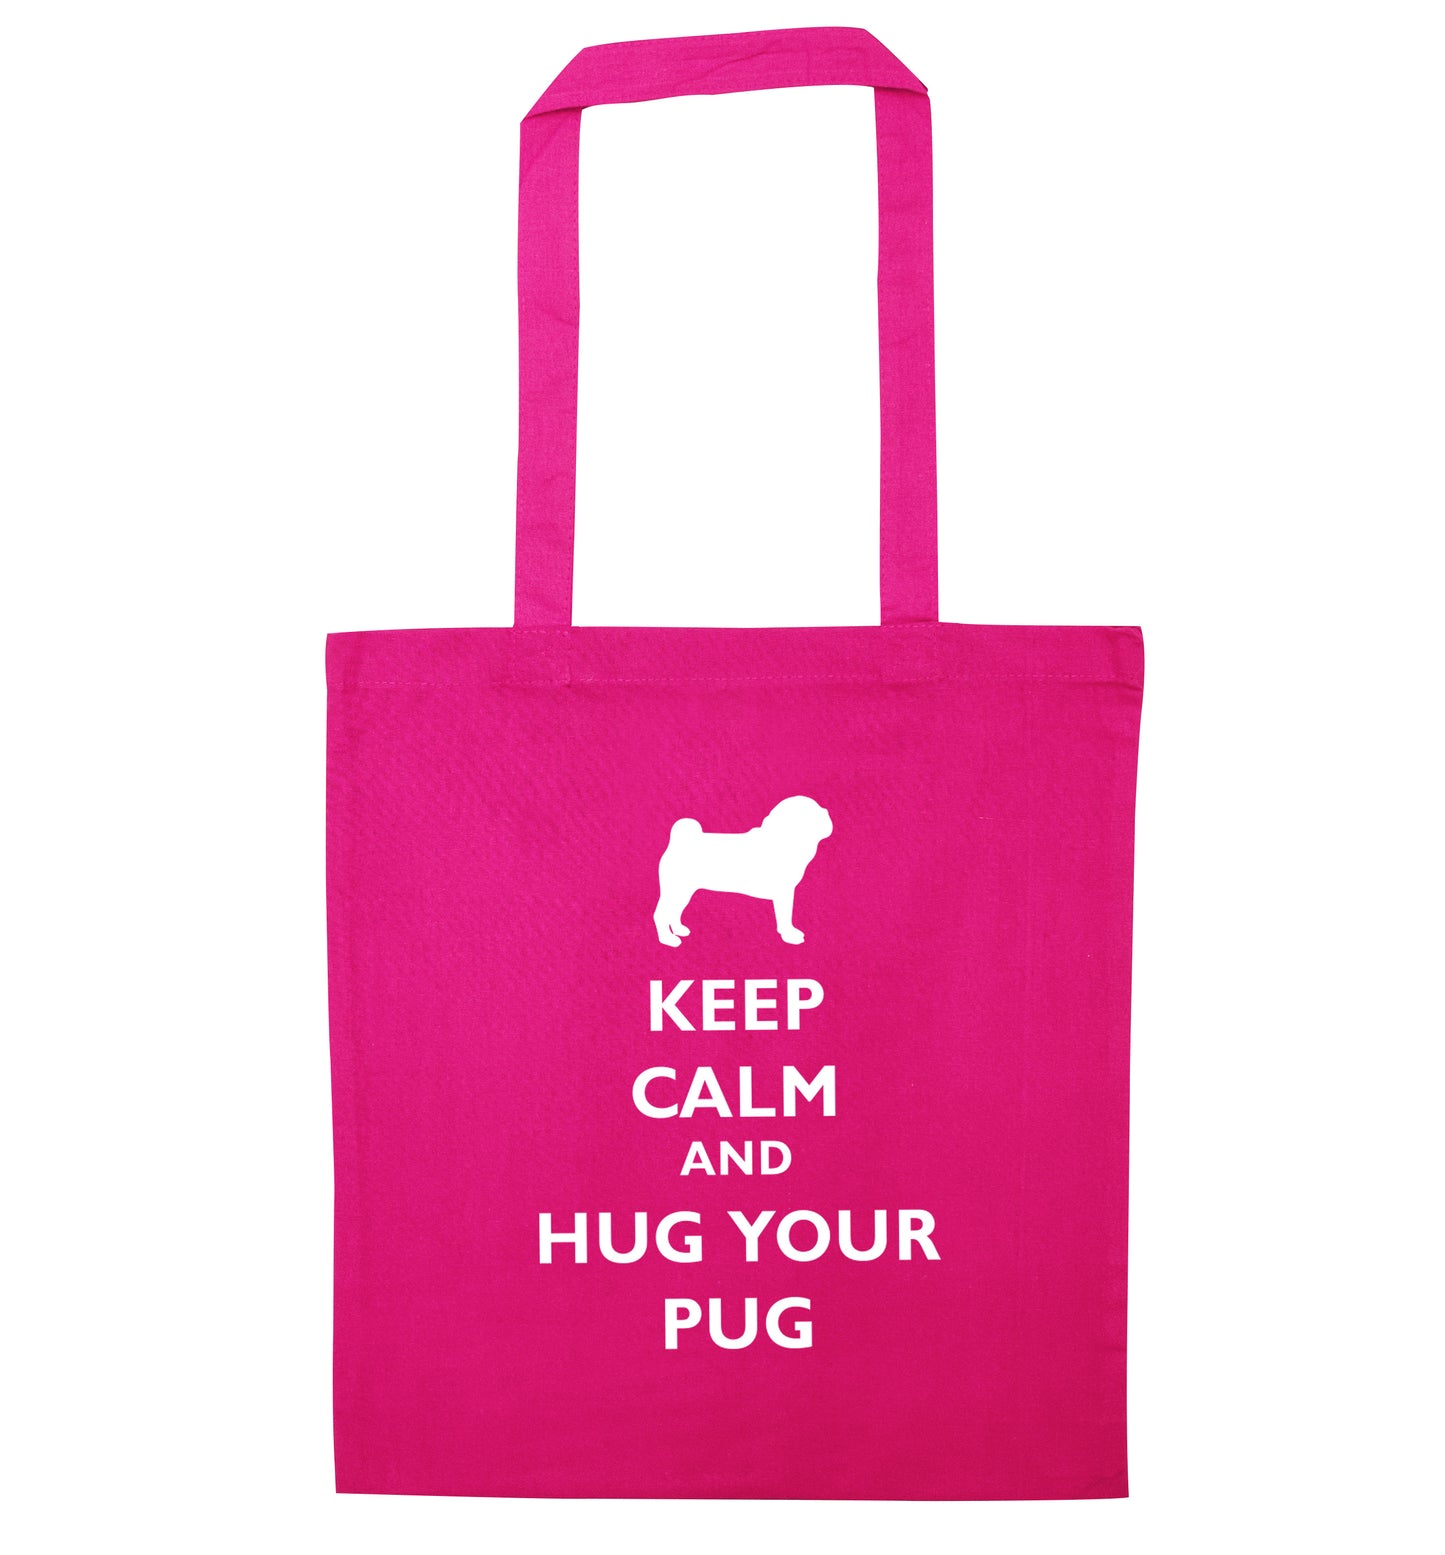 Keep calm and hug your pug pink tote bag